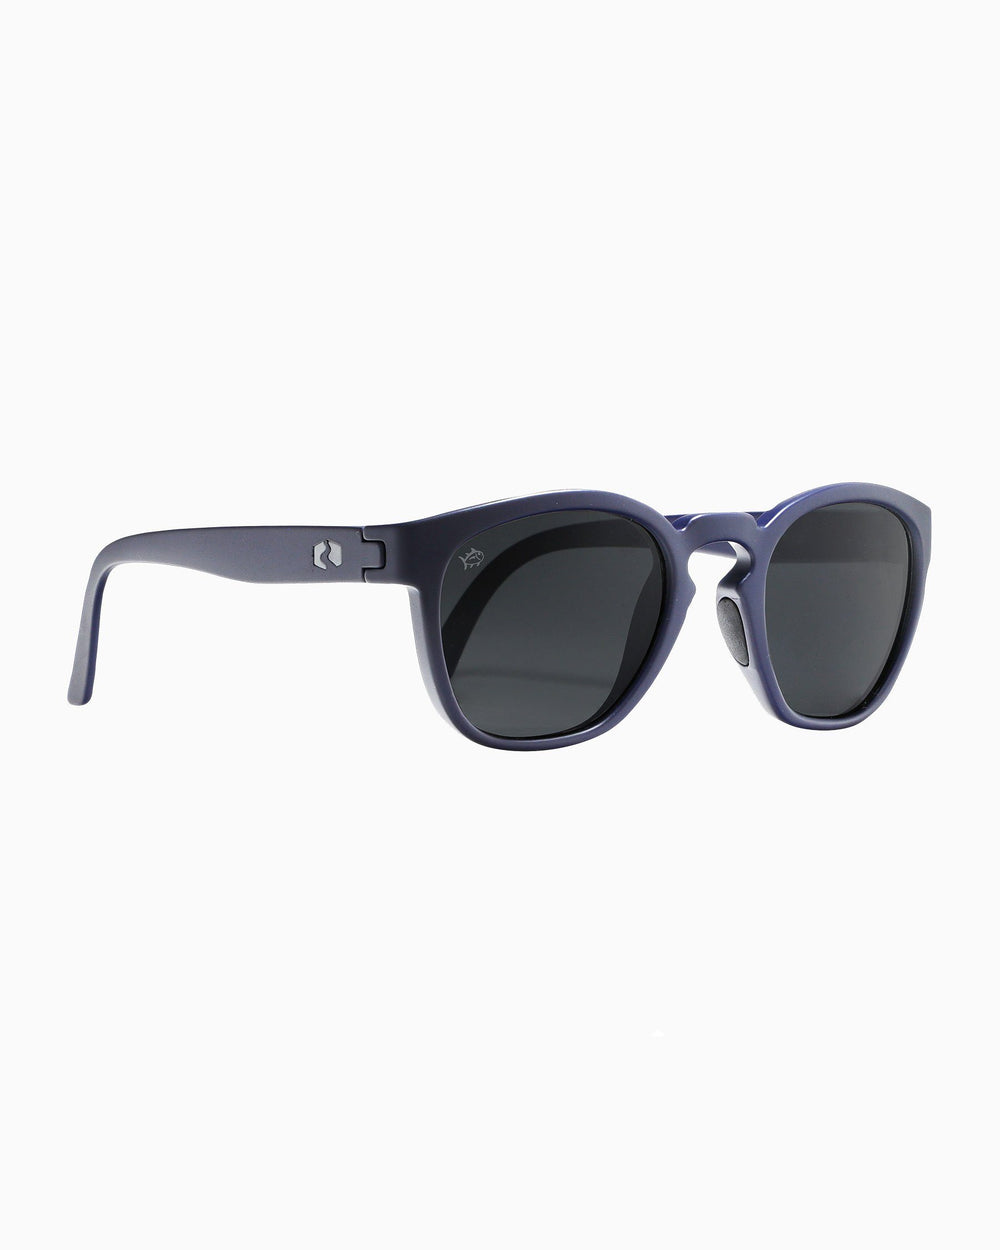 Polarized Lens Sunglasses for Men and Women